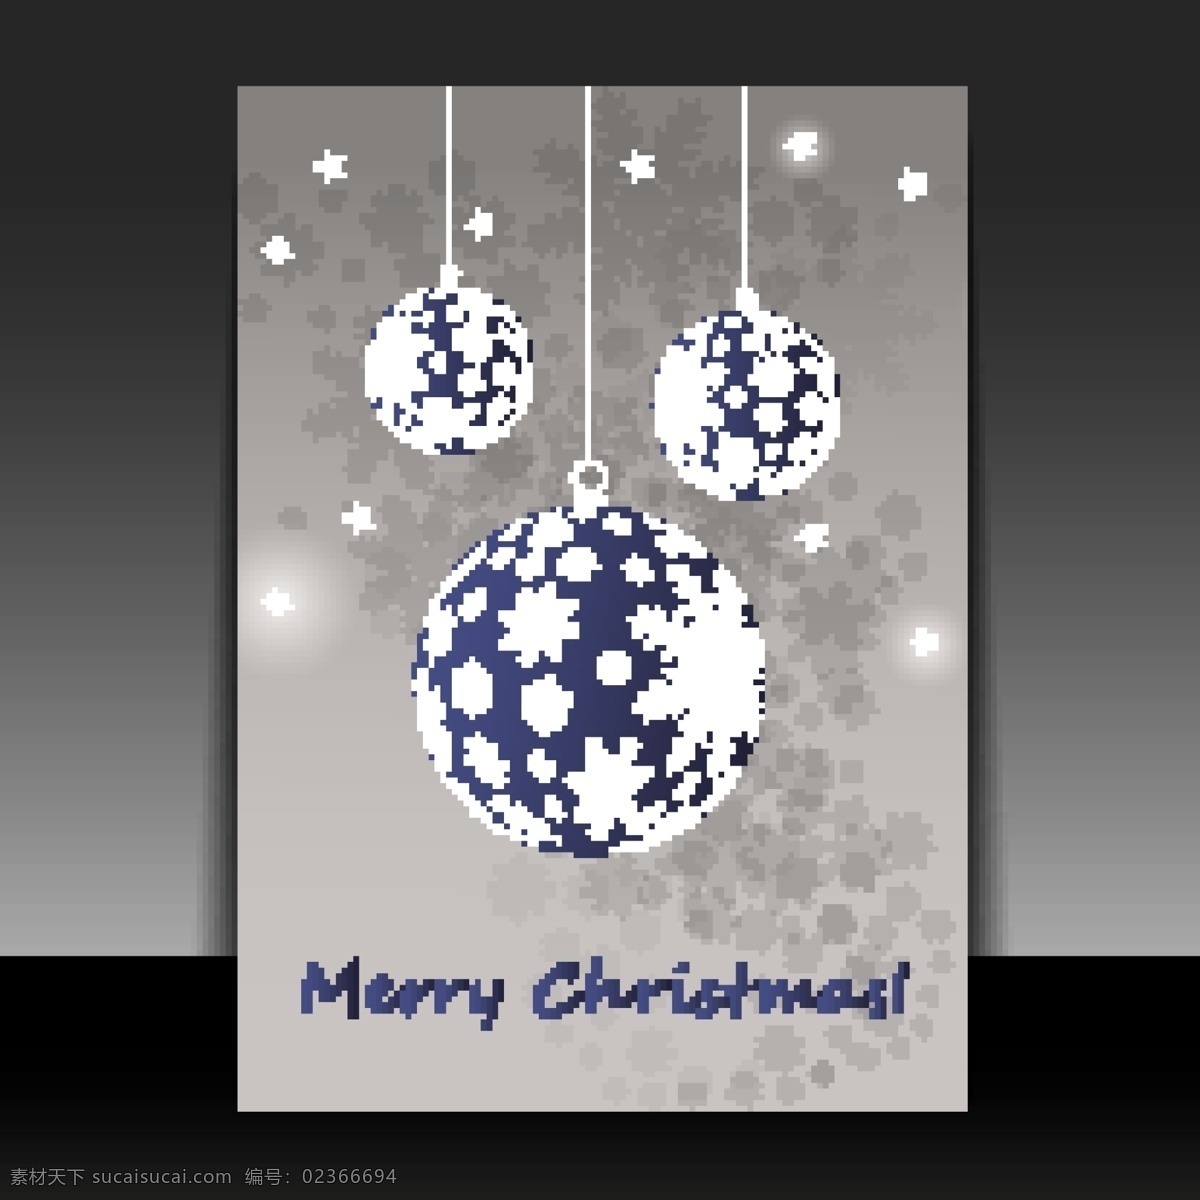 圣诞 图案 背景 矢量 模式 圣诞节 圣诞节的模式 模式的背景 圣诞背景图案 无缝 免费 艺术 美丽 蓝色 白色 矢量图 花纹花边